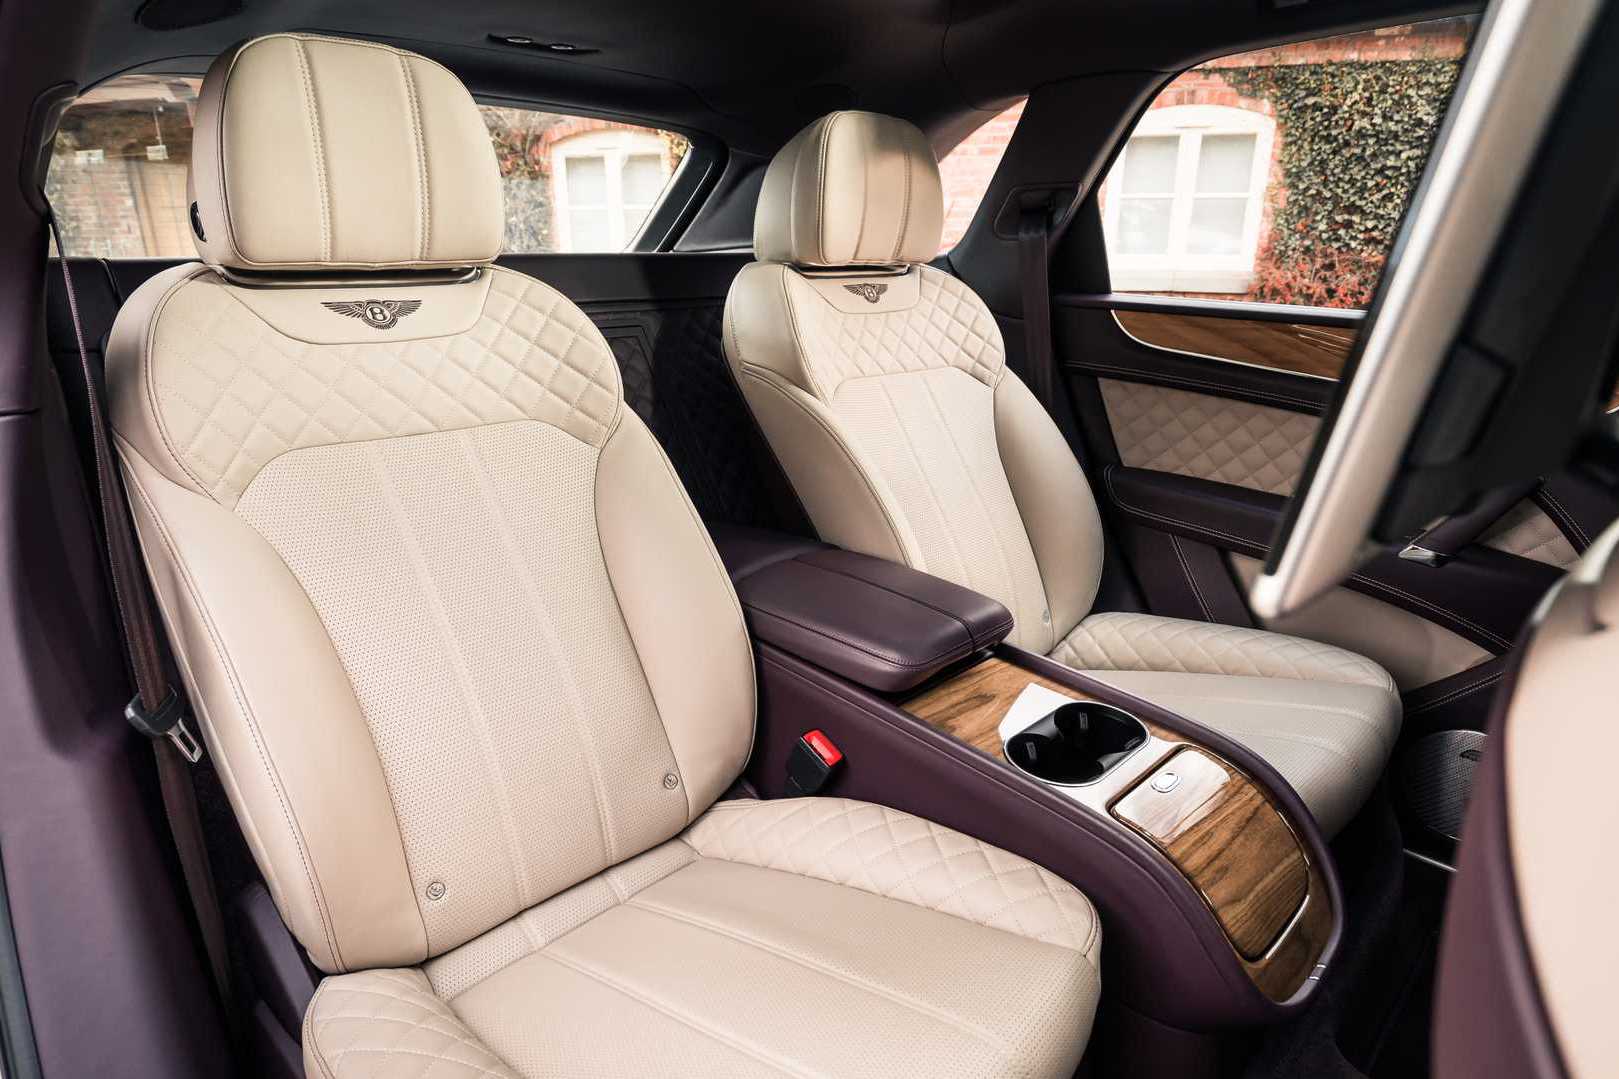 Quên ghế thương gia thông thường đi, loại ghế 24 tỷ cách tuỳ biến trên Bentley mới là đỉnh cao cho giới đại gia